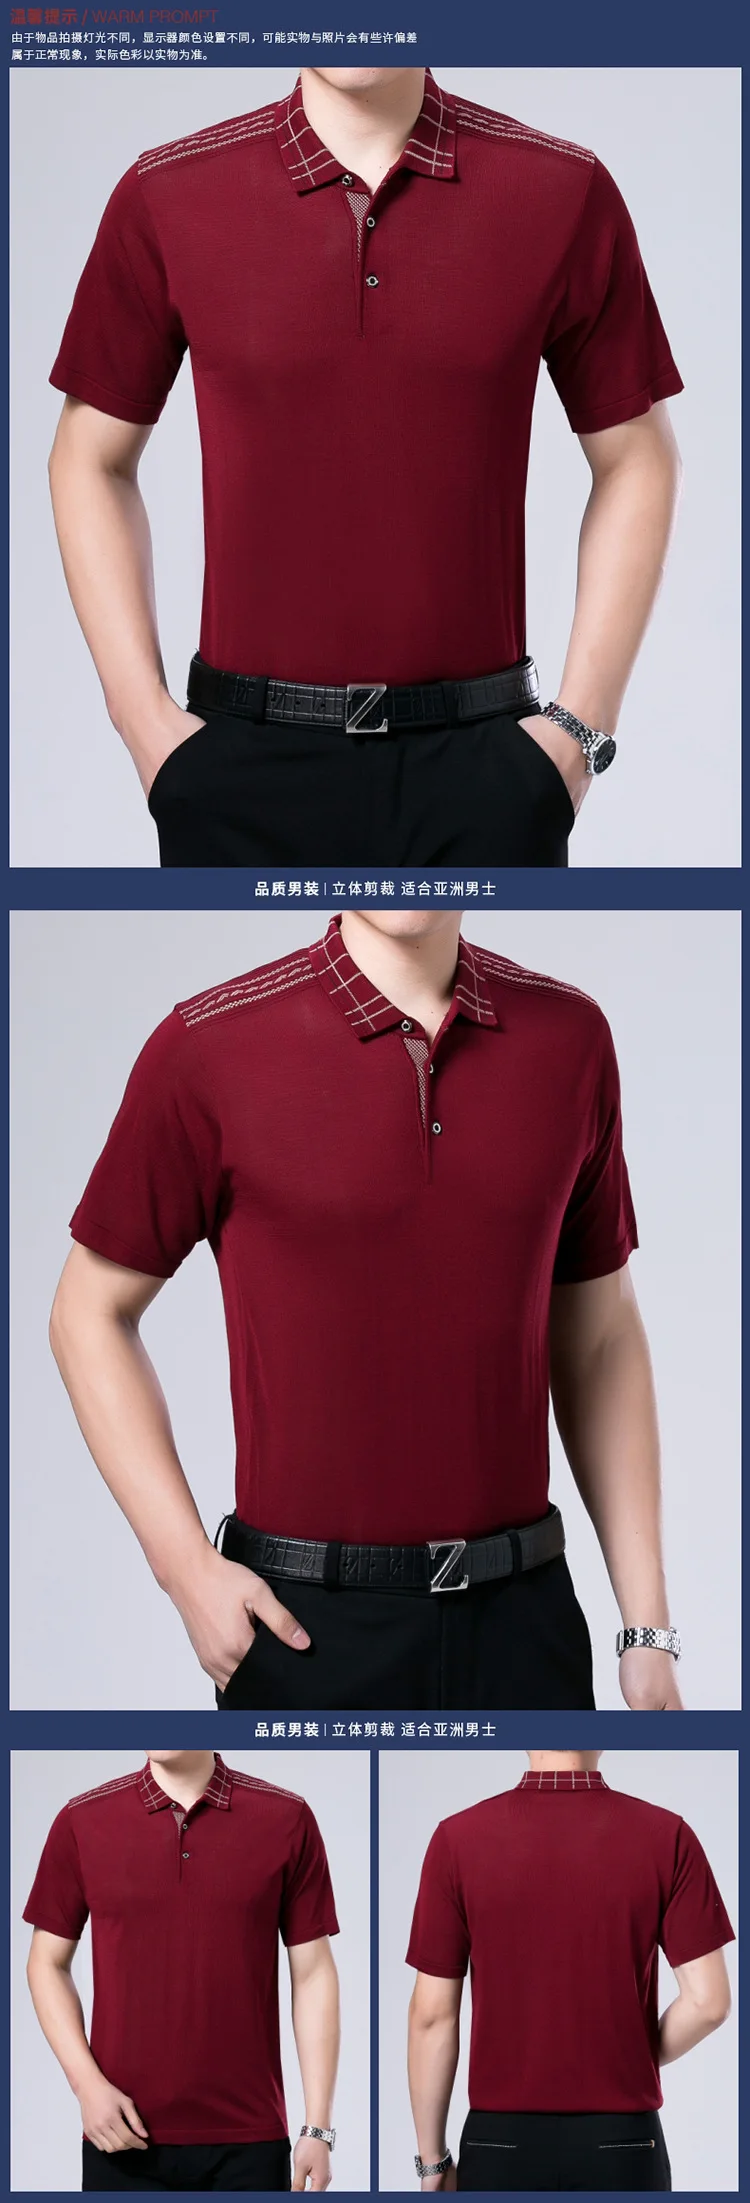 Мужчины среднего возраста брендовая рубашка-поло высокого качества Шелковый материал против морщин дышащие поло мужские модные рубашки поло размер плюс